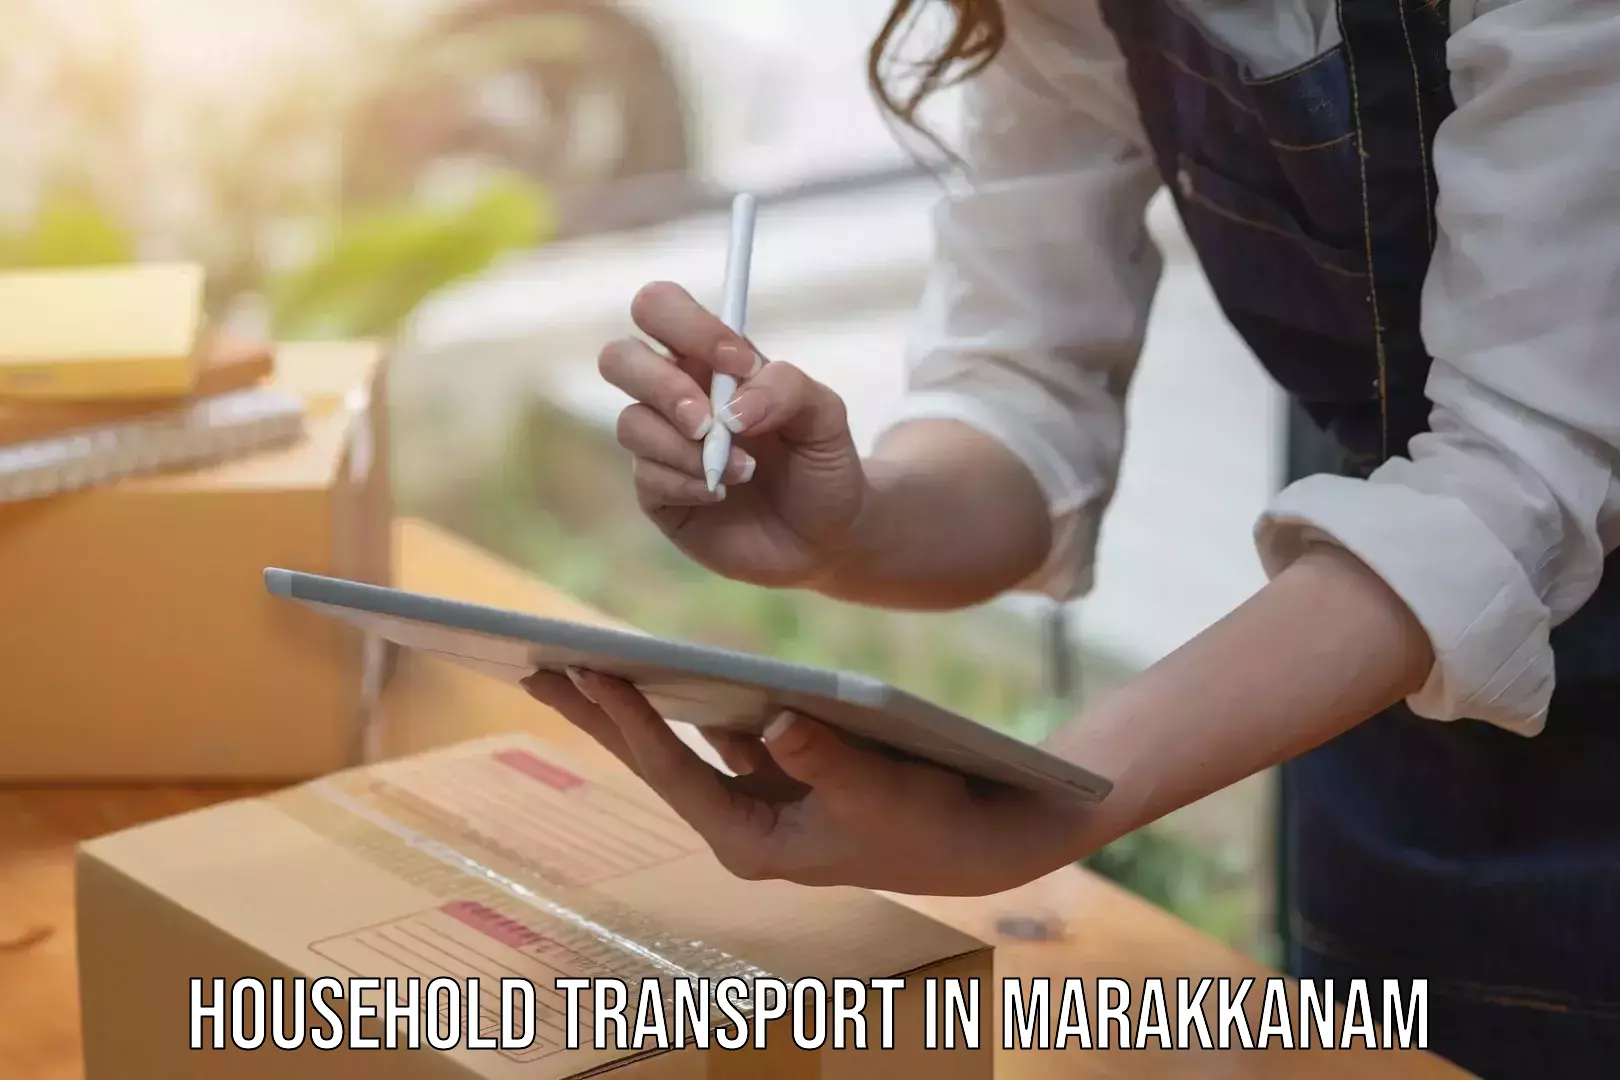 Furniture transport professionals in Marakkanam